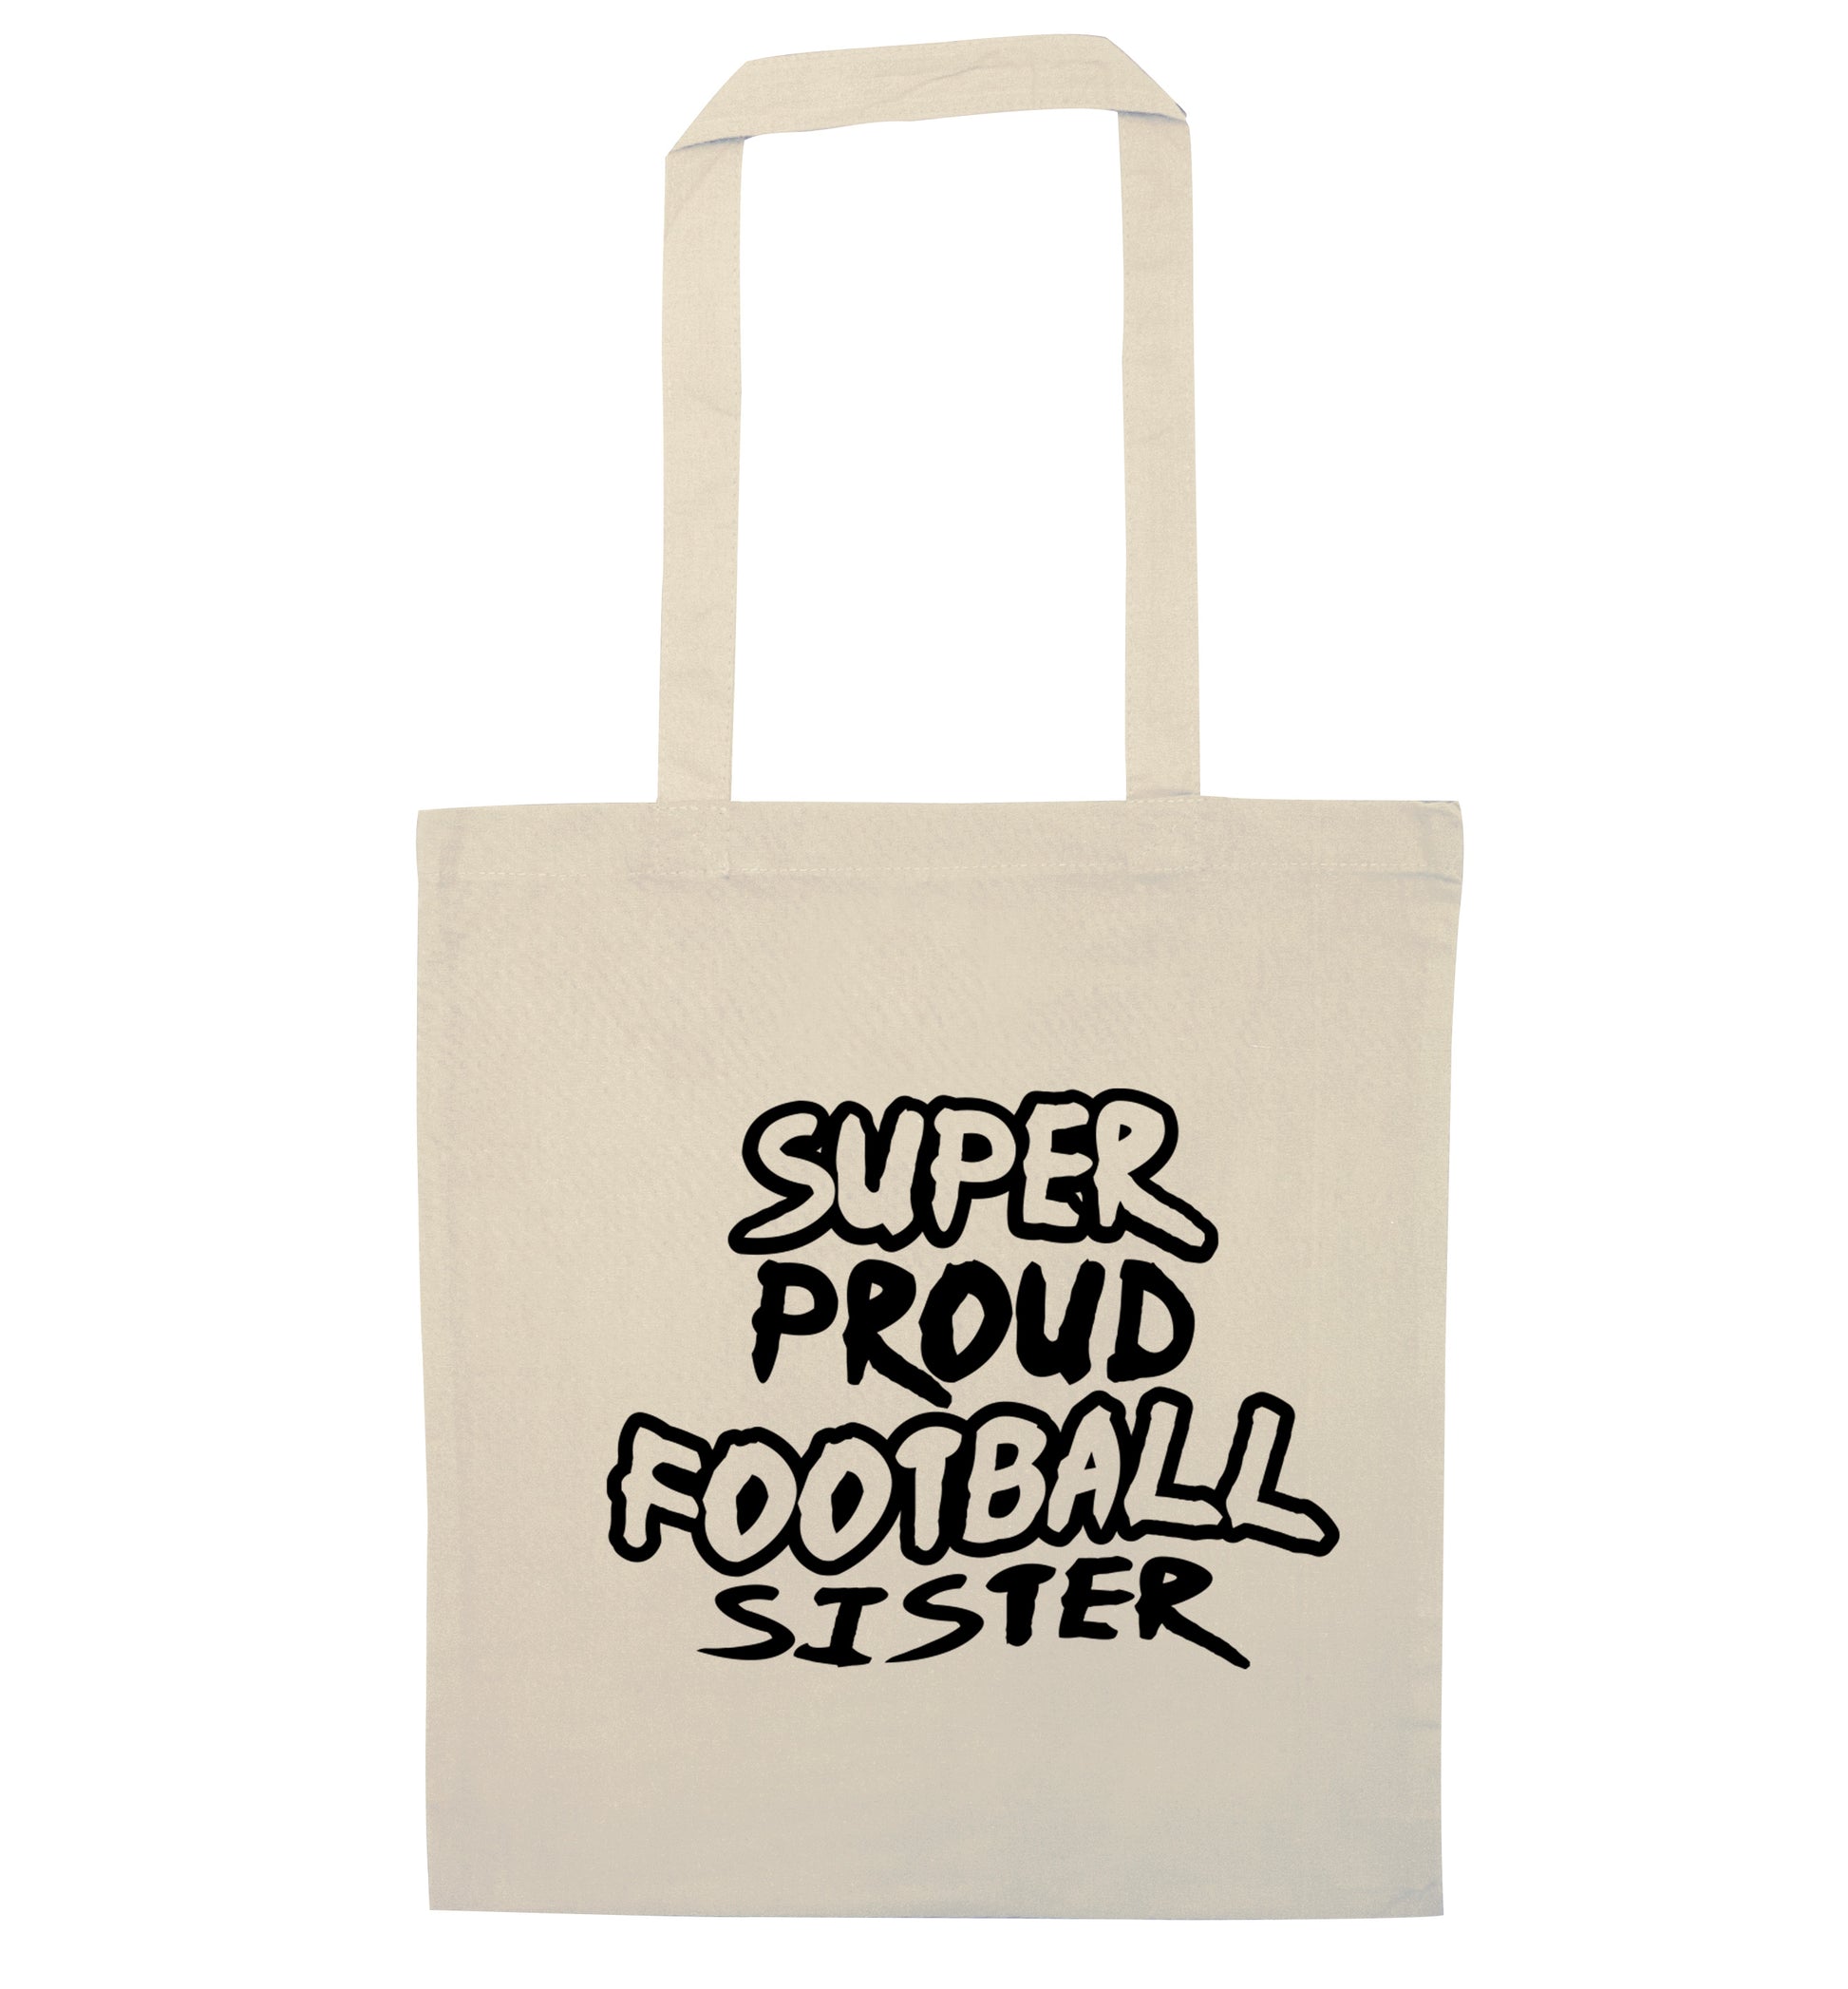 Super proud football sister natural tote bag